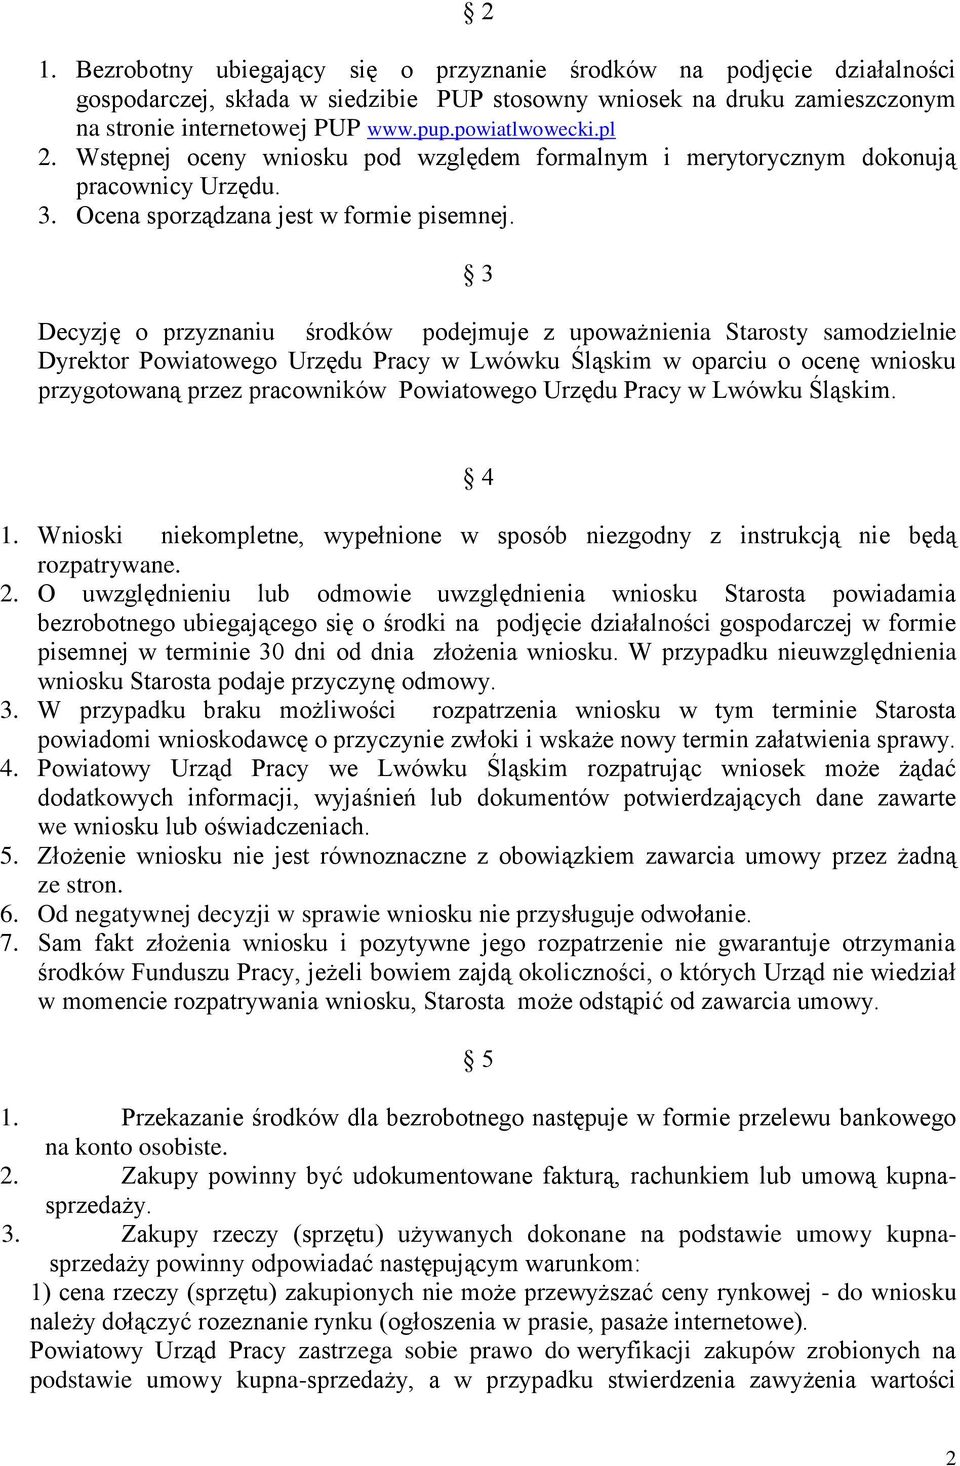 3 Decyzję o przyznaniu środków podejmuje z upoważnienia Starosty samodzielnie Dyrektor Powiatowego Urzędu Pracy w Lwówku Śląskim w oparciu o ocenę wniosku przygotowaną przez pracowników Powiatowego